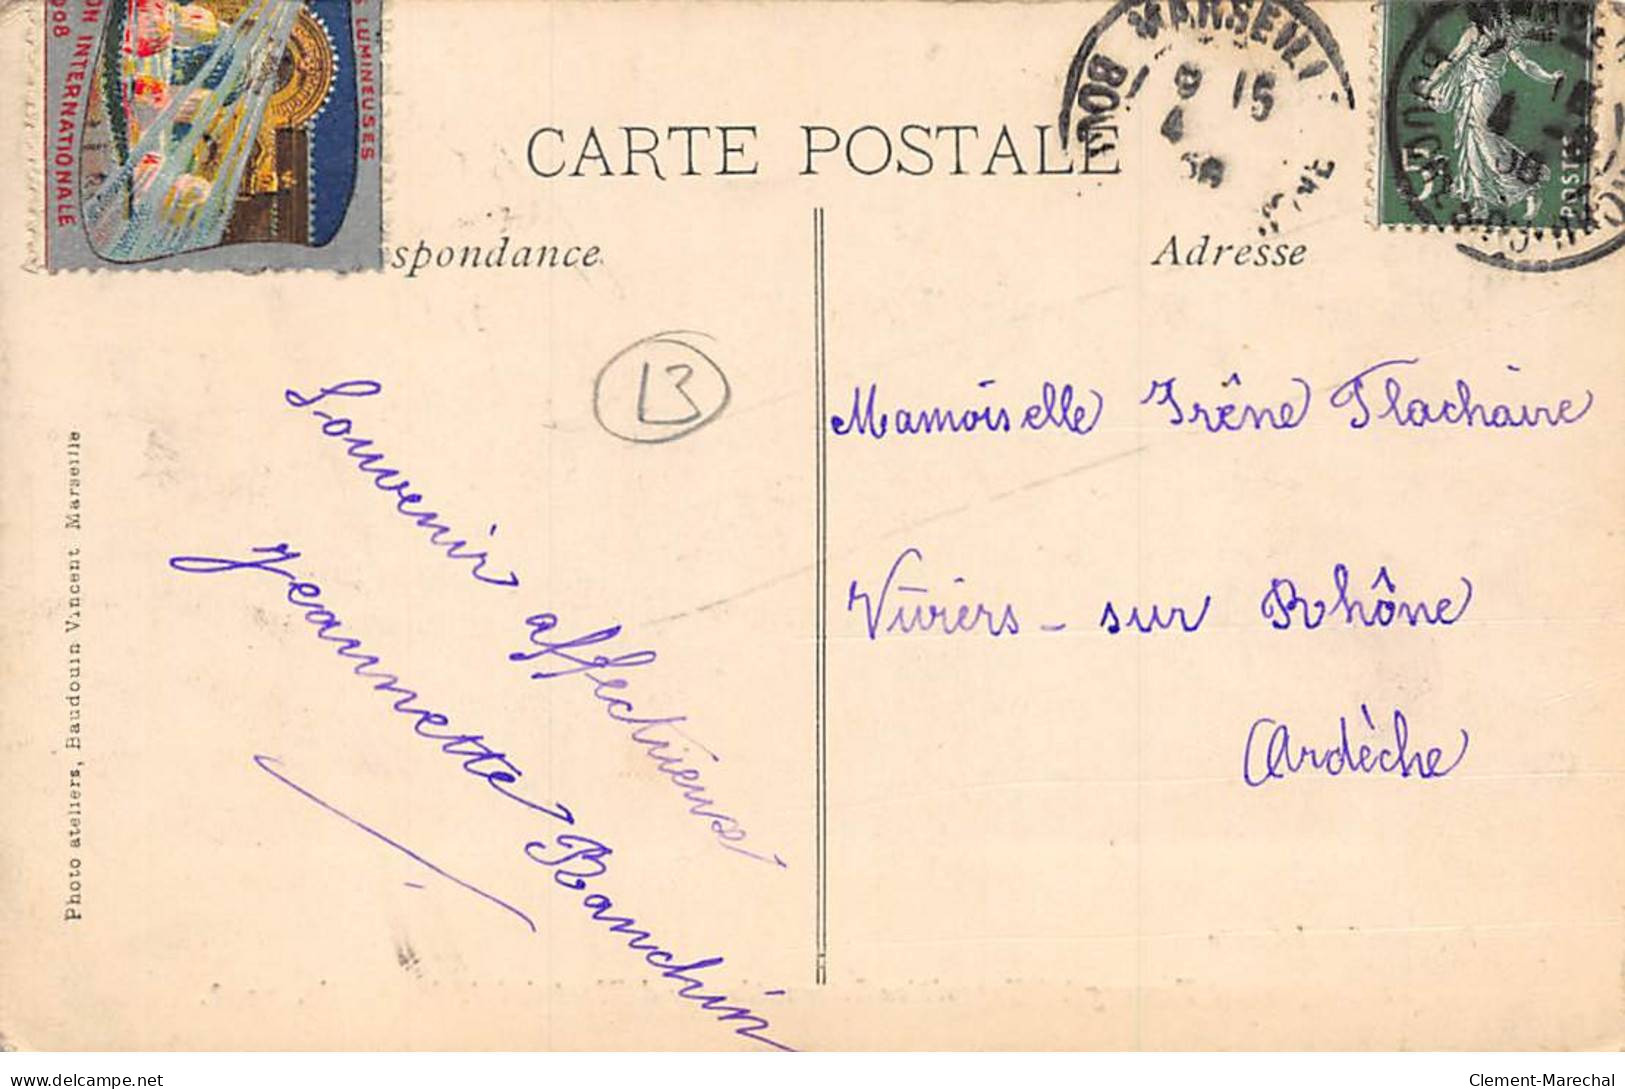 MARSEILLE - 1908 - Le Campement Touareg à L'Exposition Internationale D'Electricité - Très Bon état - Electrical Trade Shows And Other